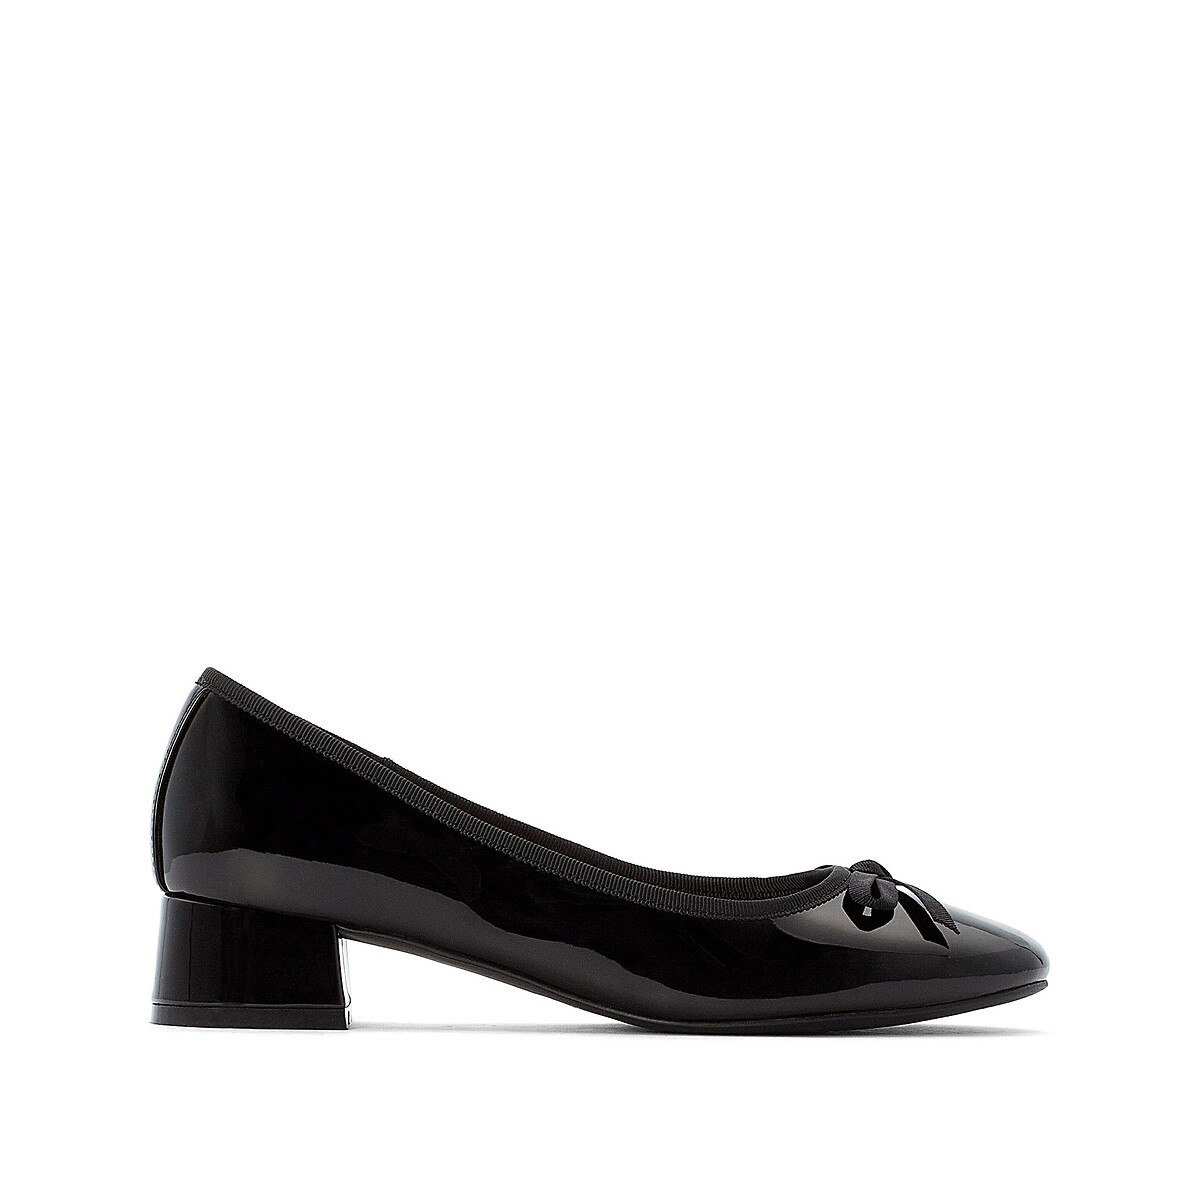 Matematik olie Fancy kjole Patent block heel ballet pumps with bow detail black La Redoute Collections  | La Redoute